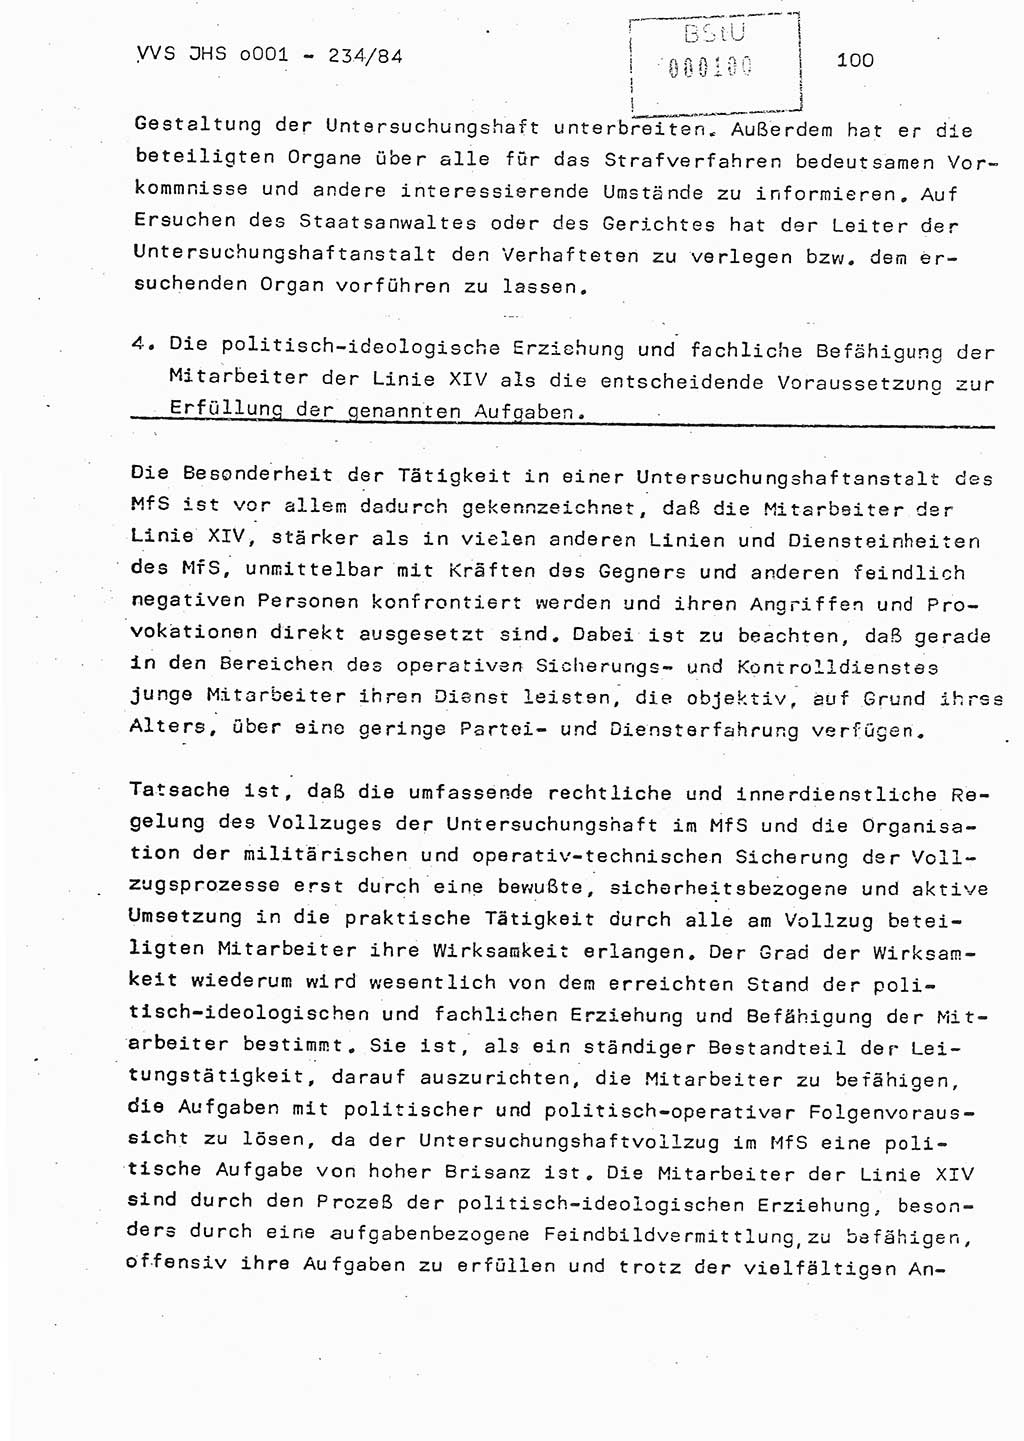 Dissertation Oberst Siegfried Rataizick (Abt. ⅩⅣ), Oberstleutnant Volkmar Heinz (Abt. ⅩⅣ), Oberstleutnant Werner Stein (HA Ⅸ), Hauptmann Heinz Conrad (JHS), Ministerium für Staatssicherheit (MfS) [Deutsche Demokratische Republik (DDR)], Juristische Hochschule (JHS), Vertrauliche Verschlußsache (VVS) o001-234/84, Potsdam 1984, Seite 100 (Diss. MfS DDR JHS VVS o001-234/84 1984, S. 100)